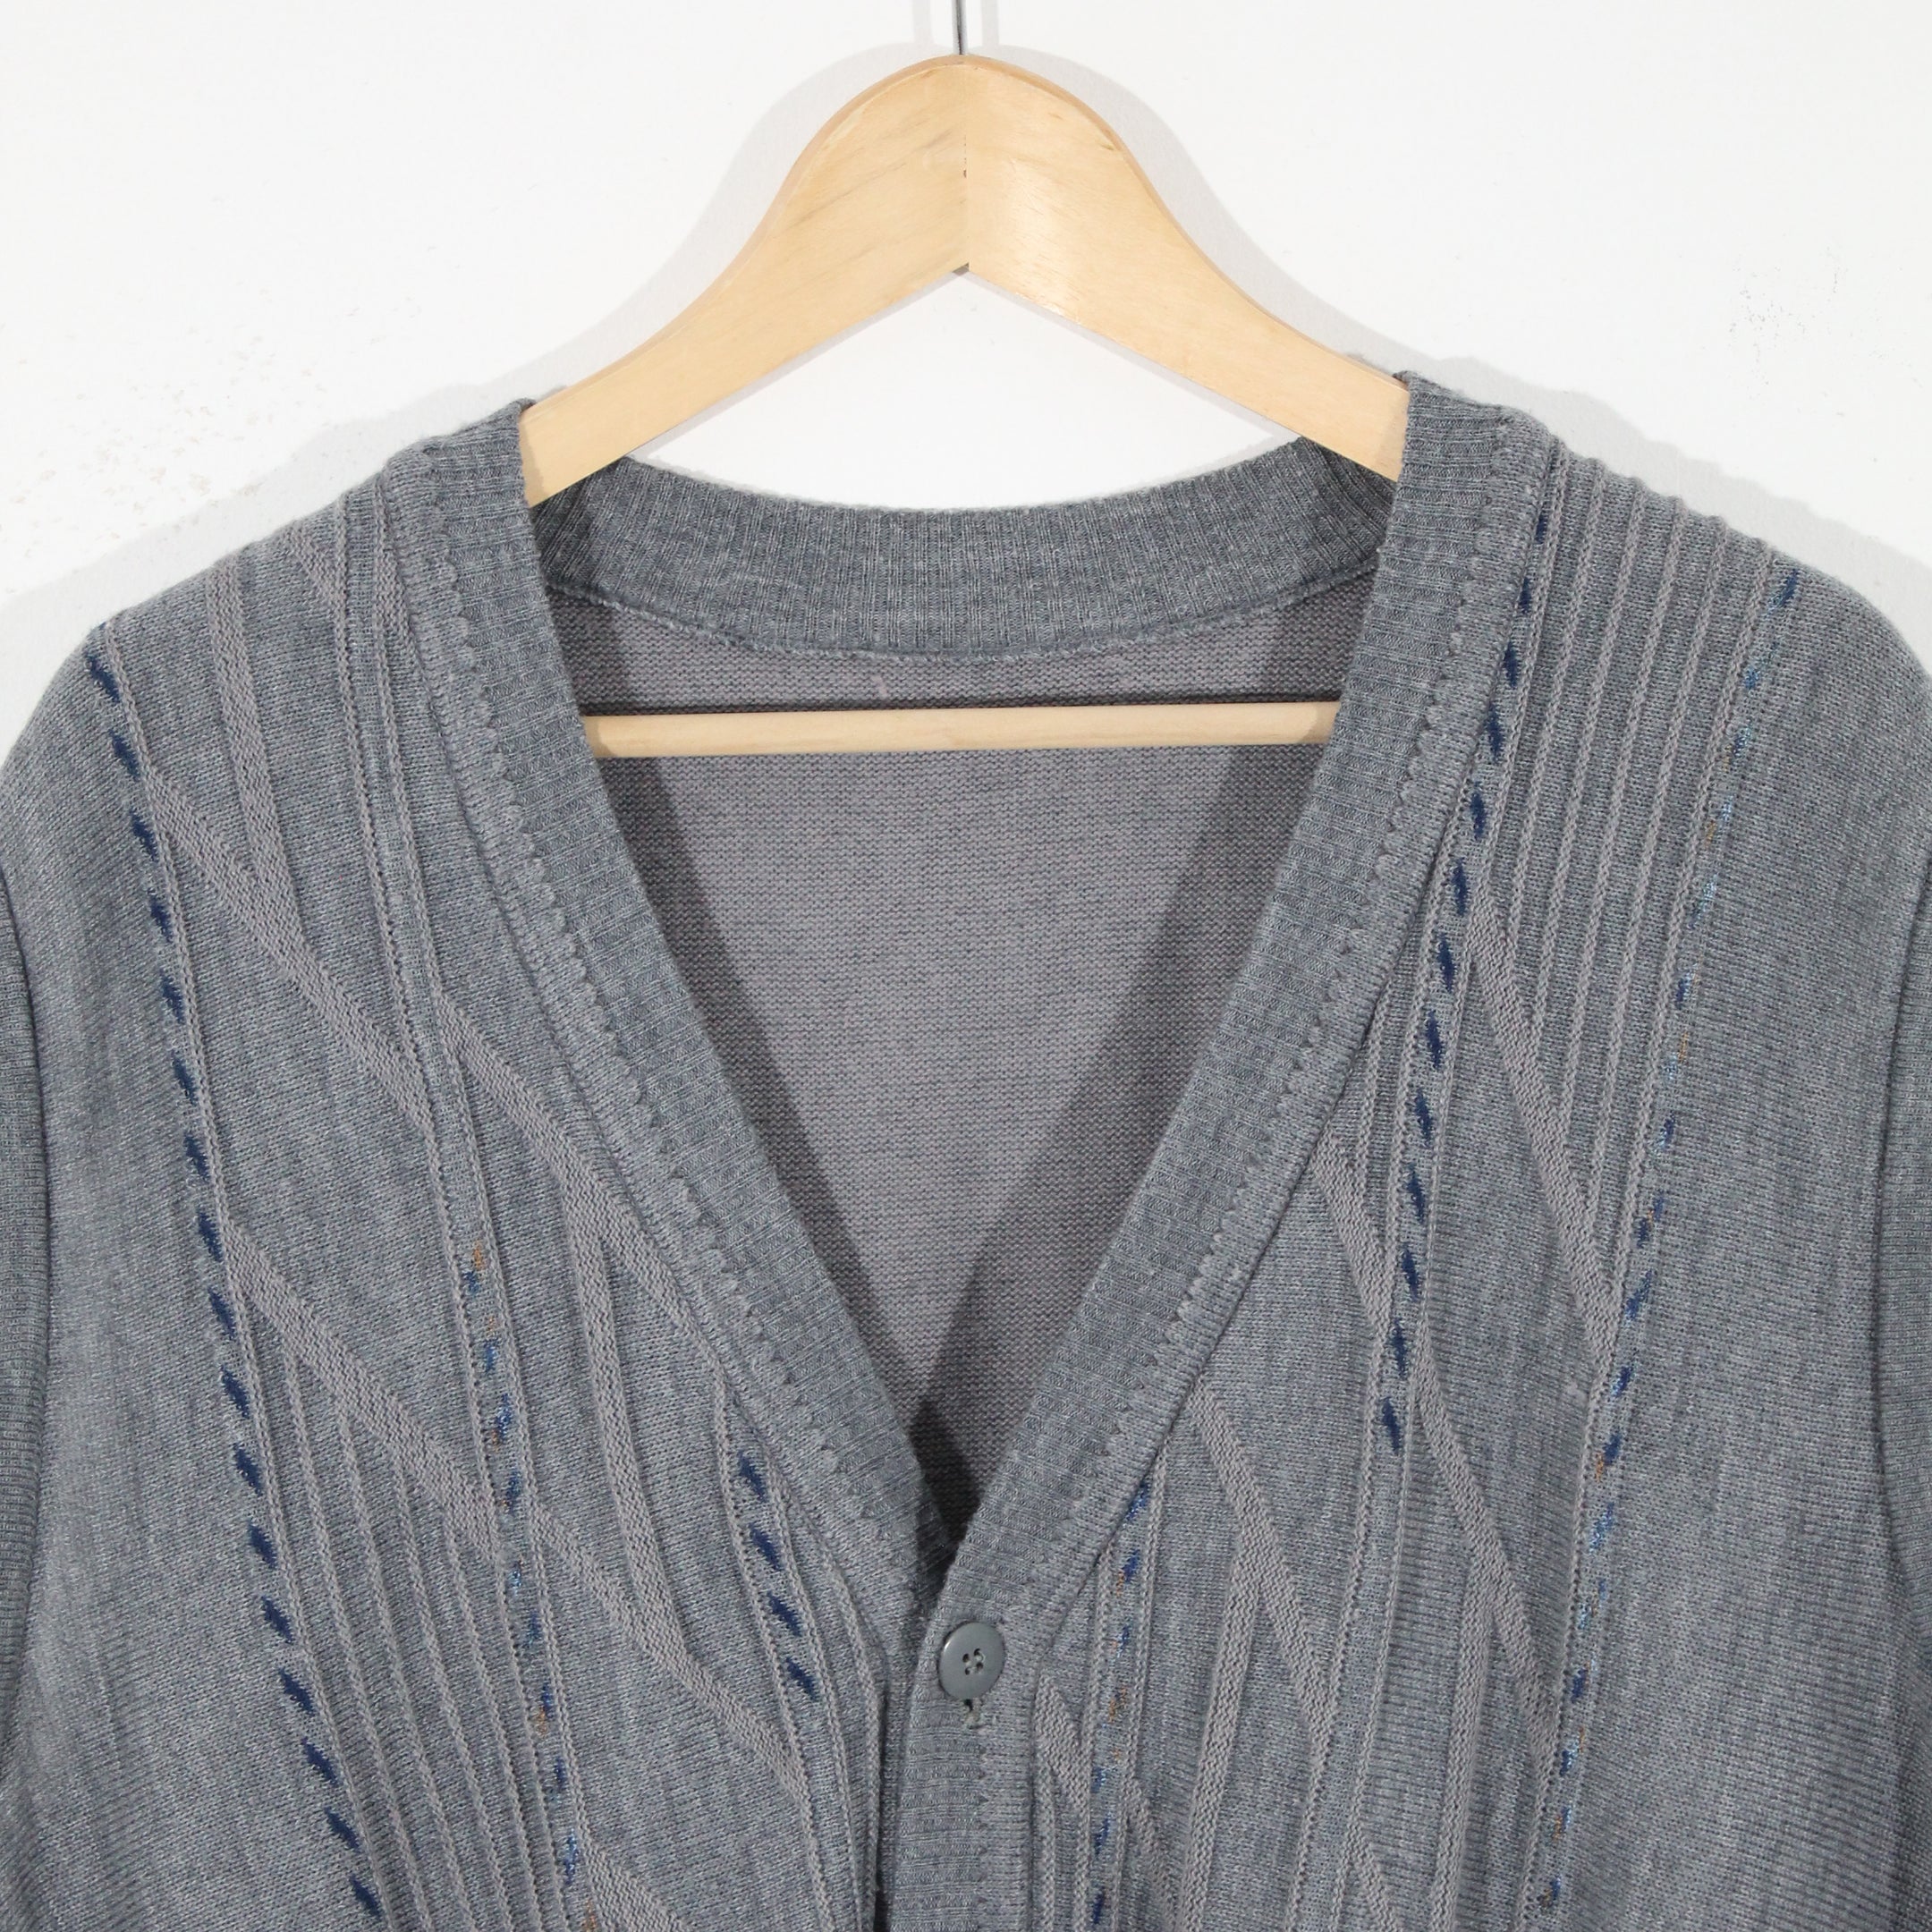 Vintage Knitted Vest (L)